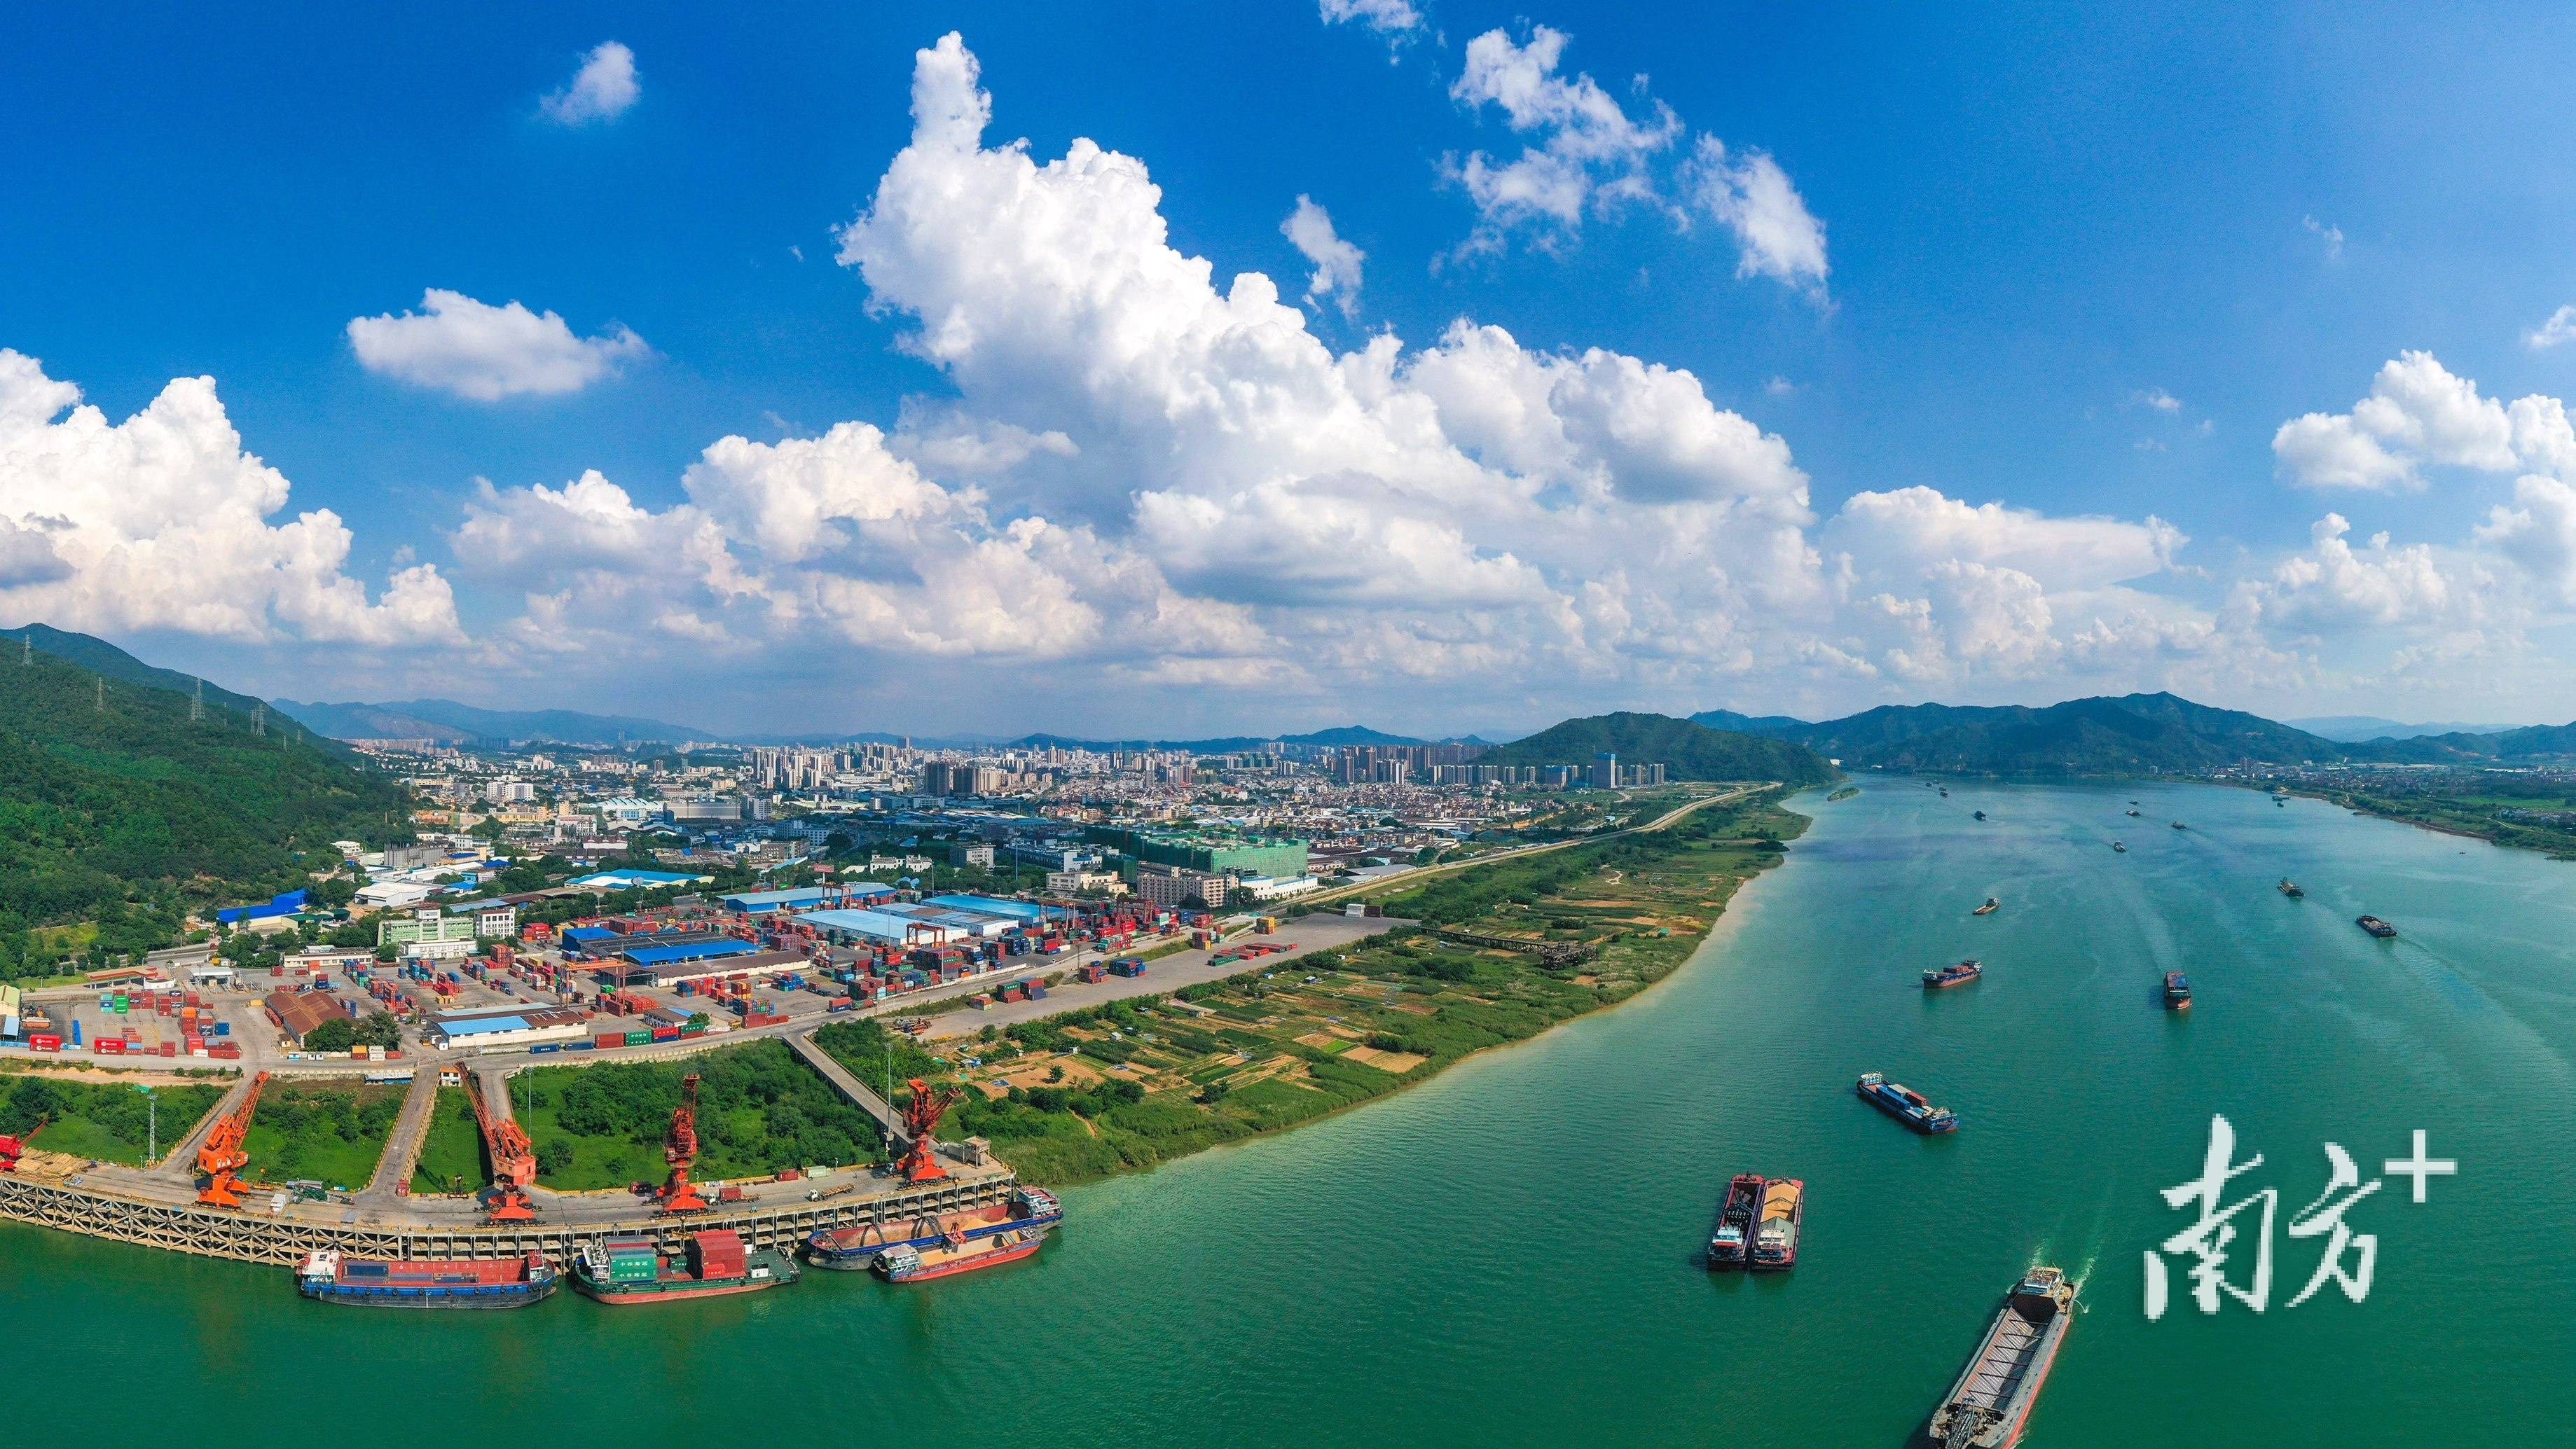 去年珠江水系四省区完成水路货运量约14亿吨